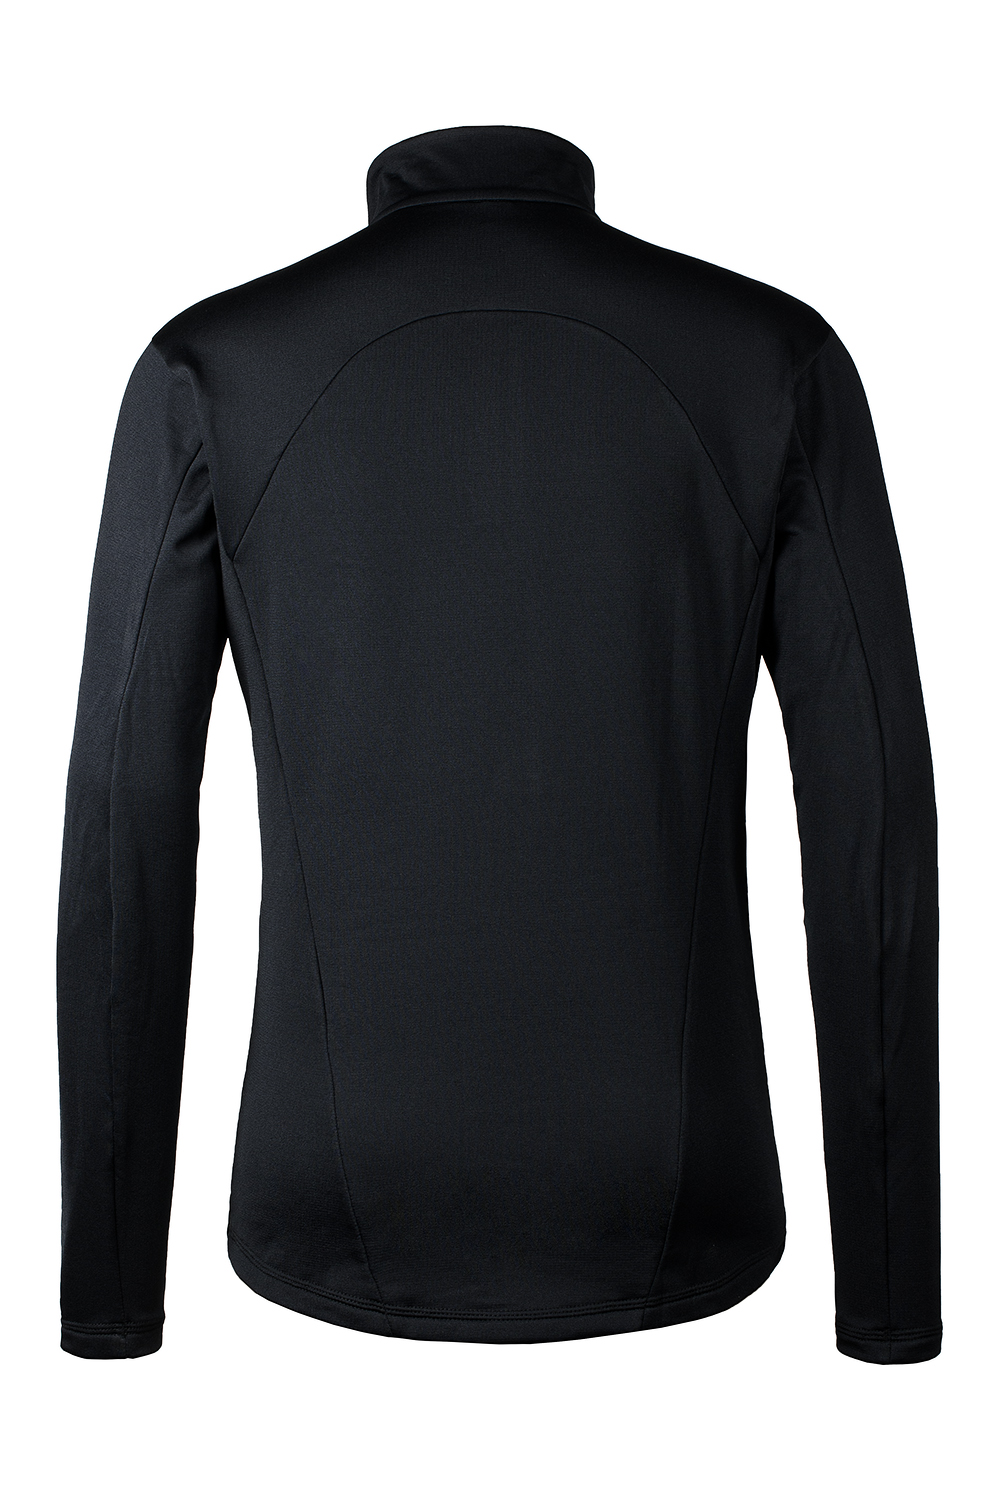 Мужской пуловер термобелье Pirs-1 купить в магазине экипировки для альпинизма и туризма O3 Ozone